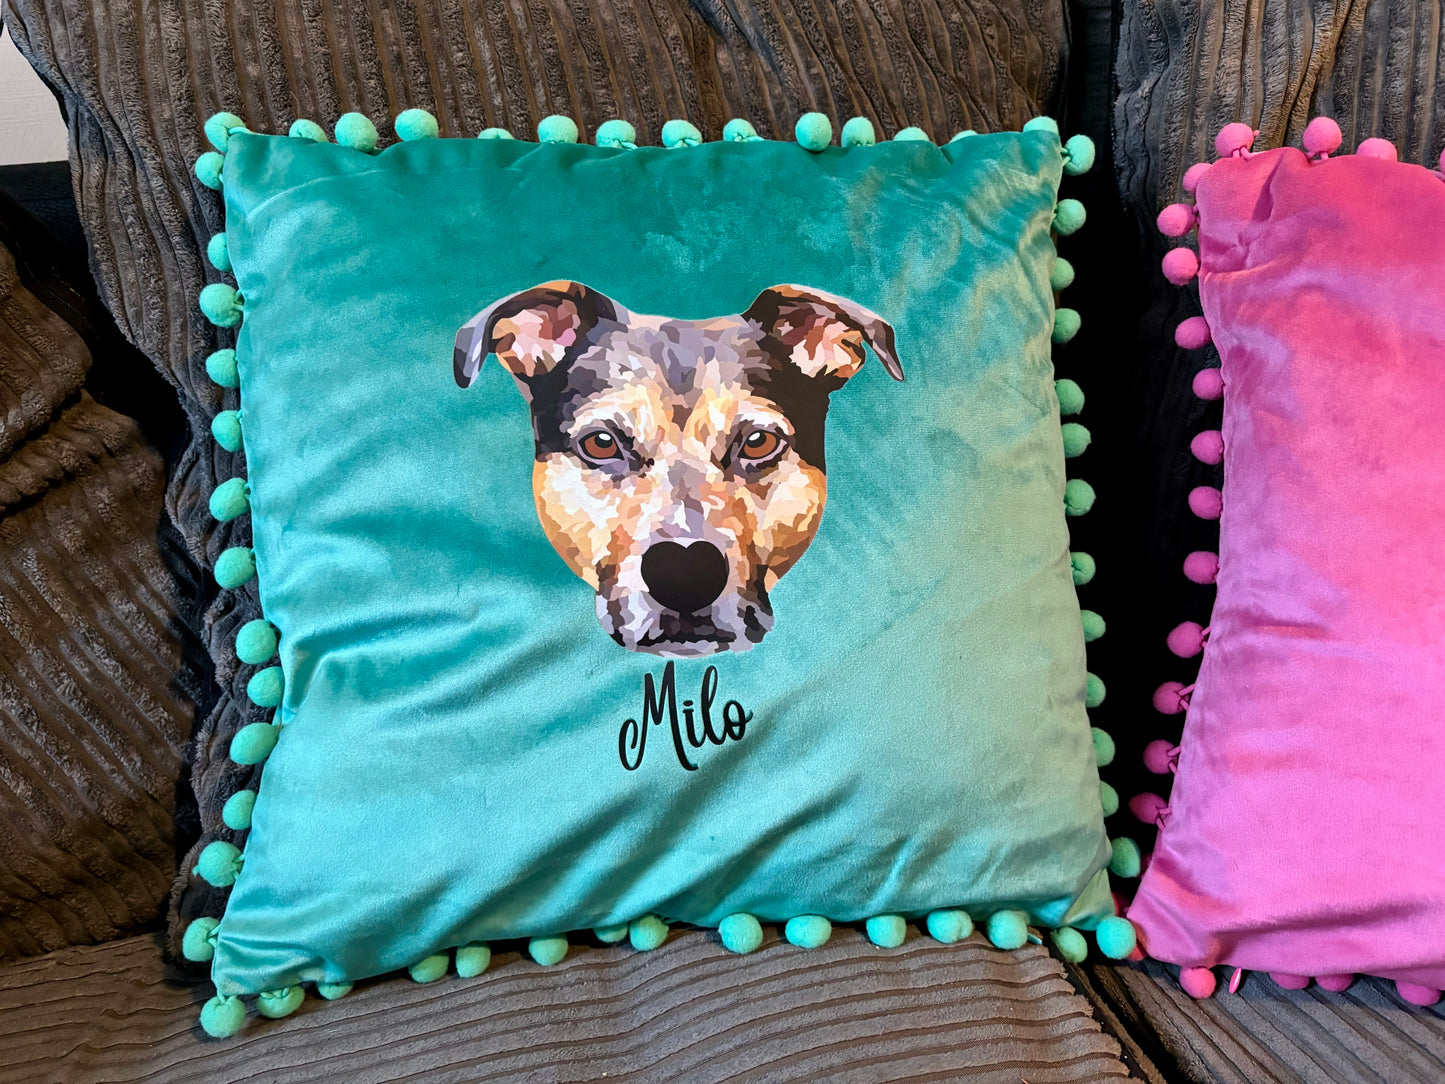 Pet Portrait Cushions